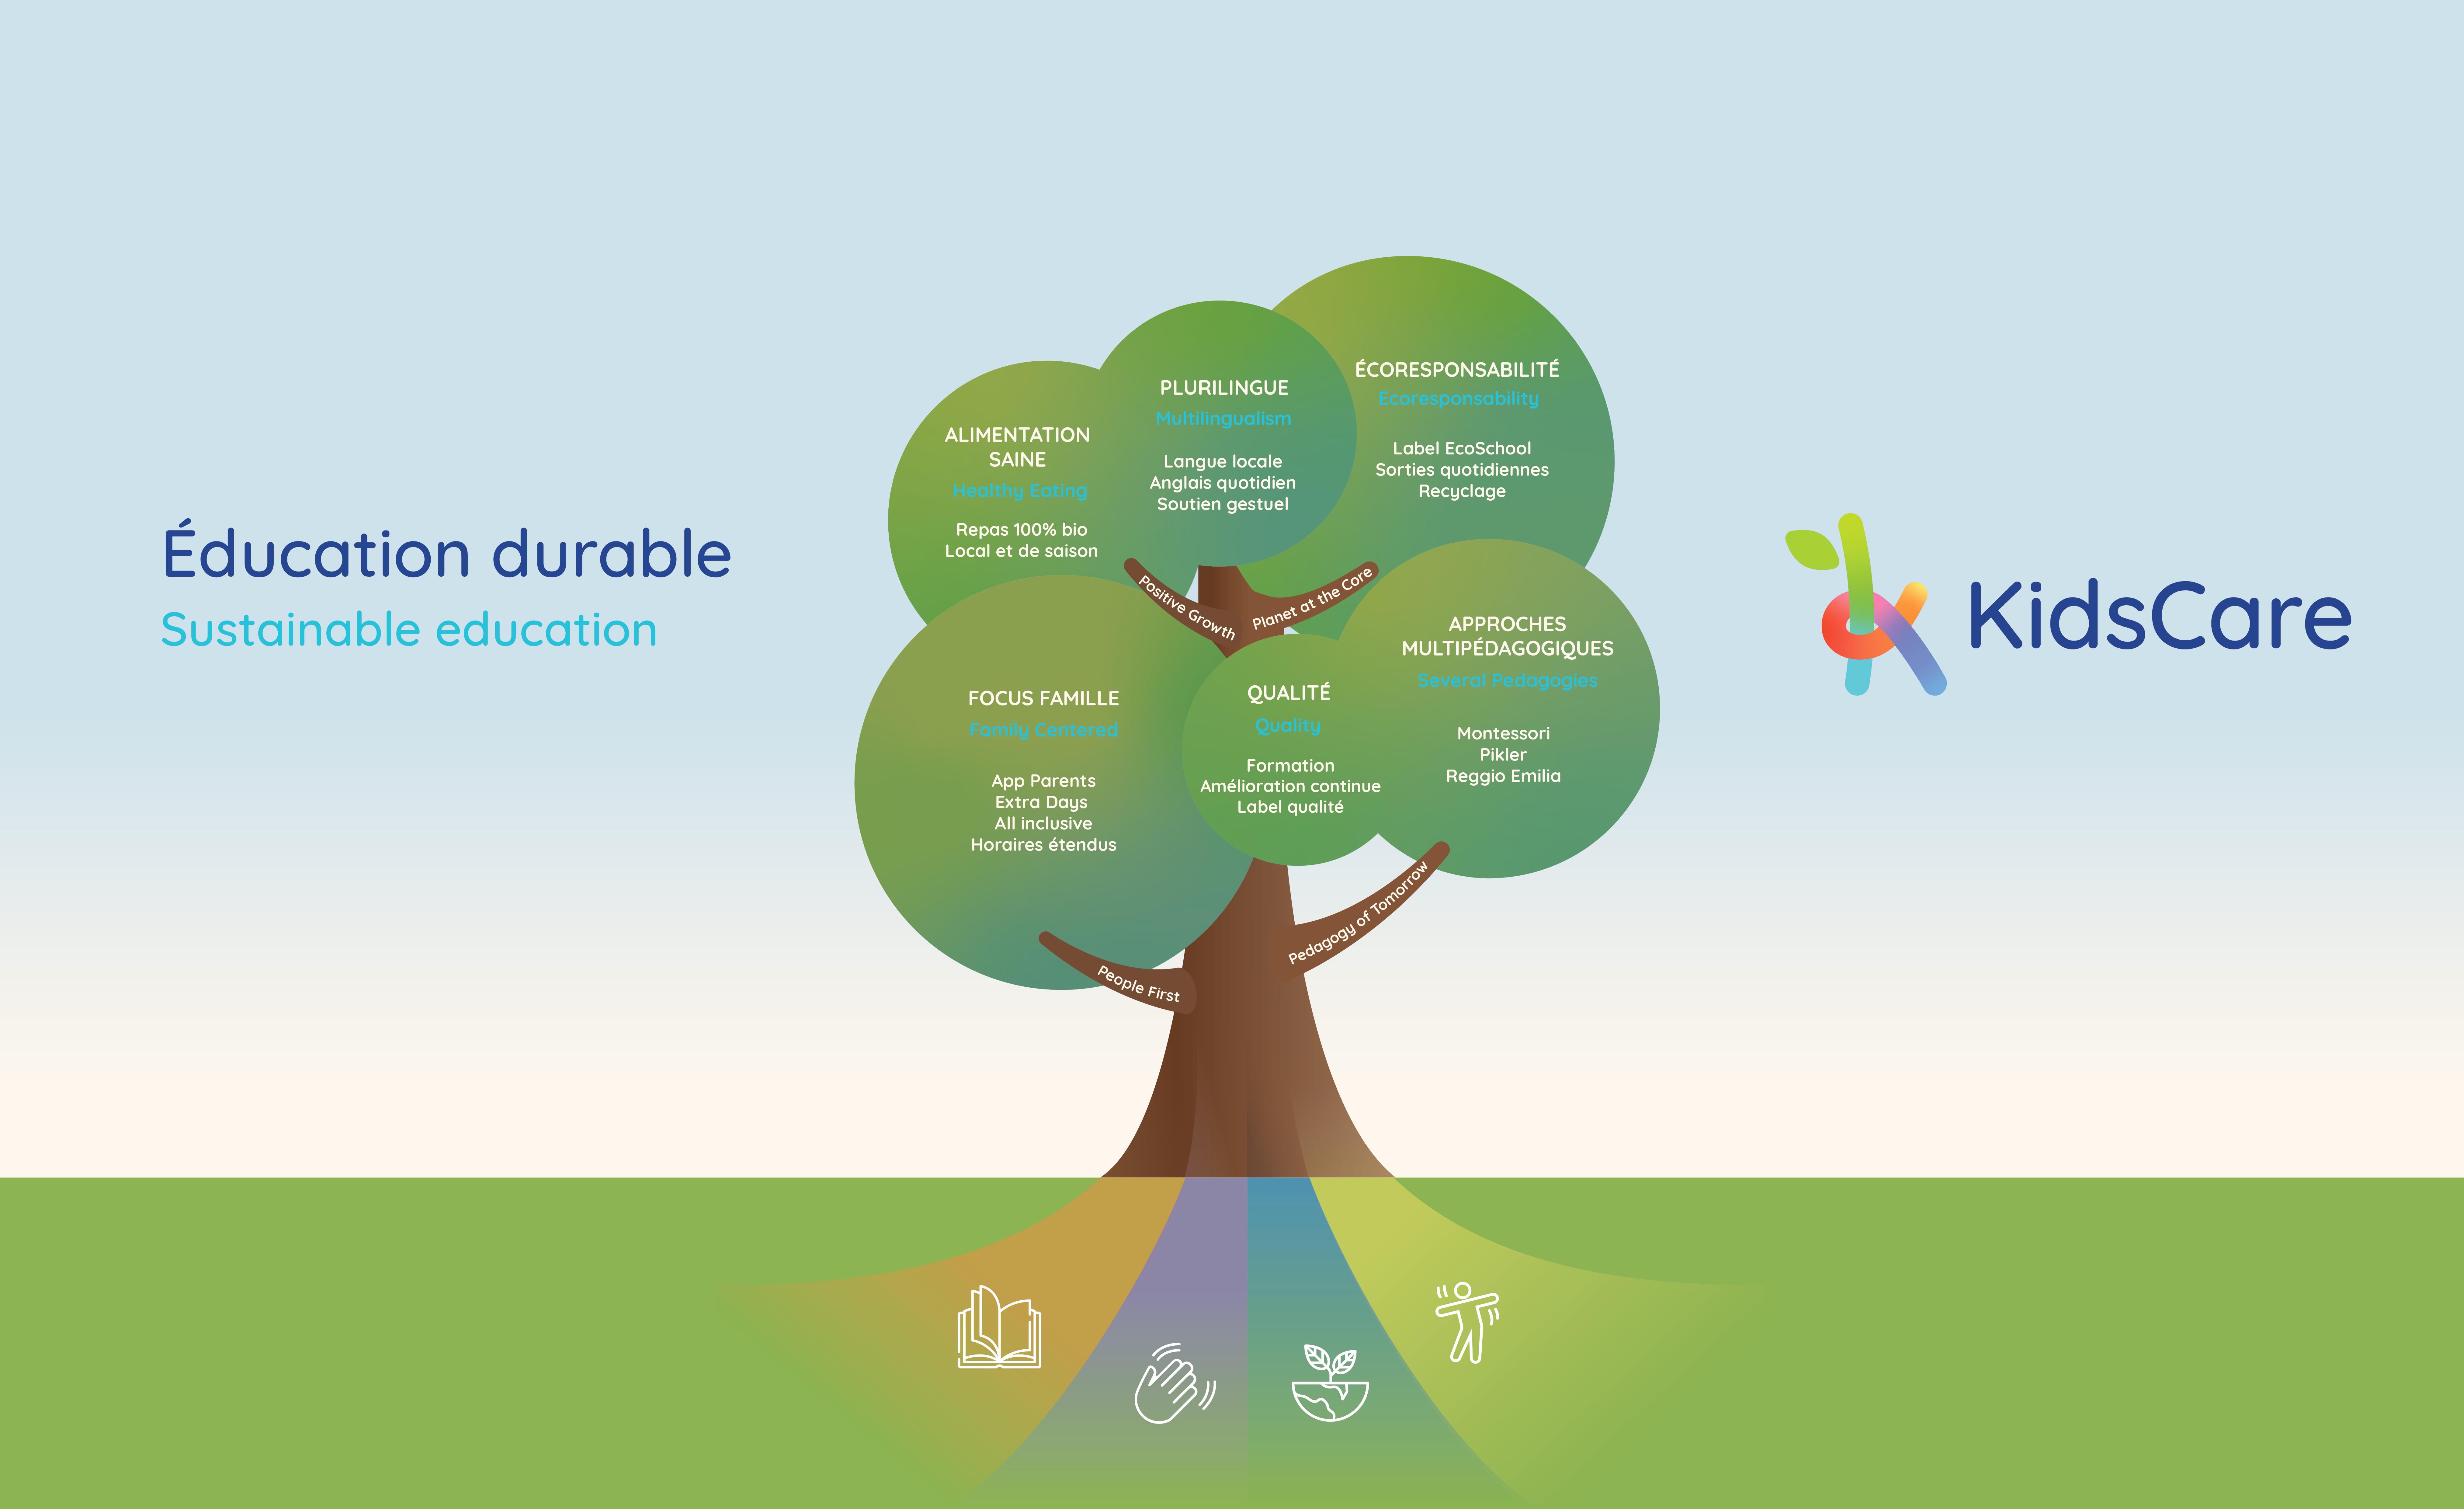 arbre des valeurs kidscare suisse education durable